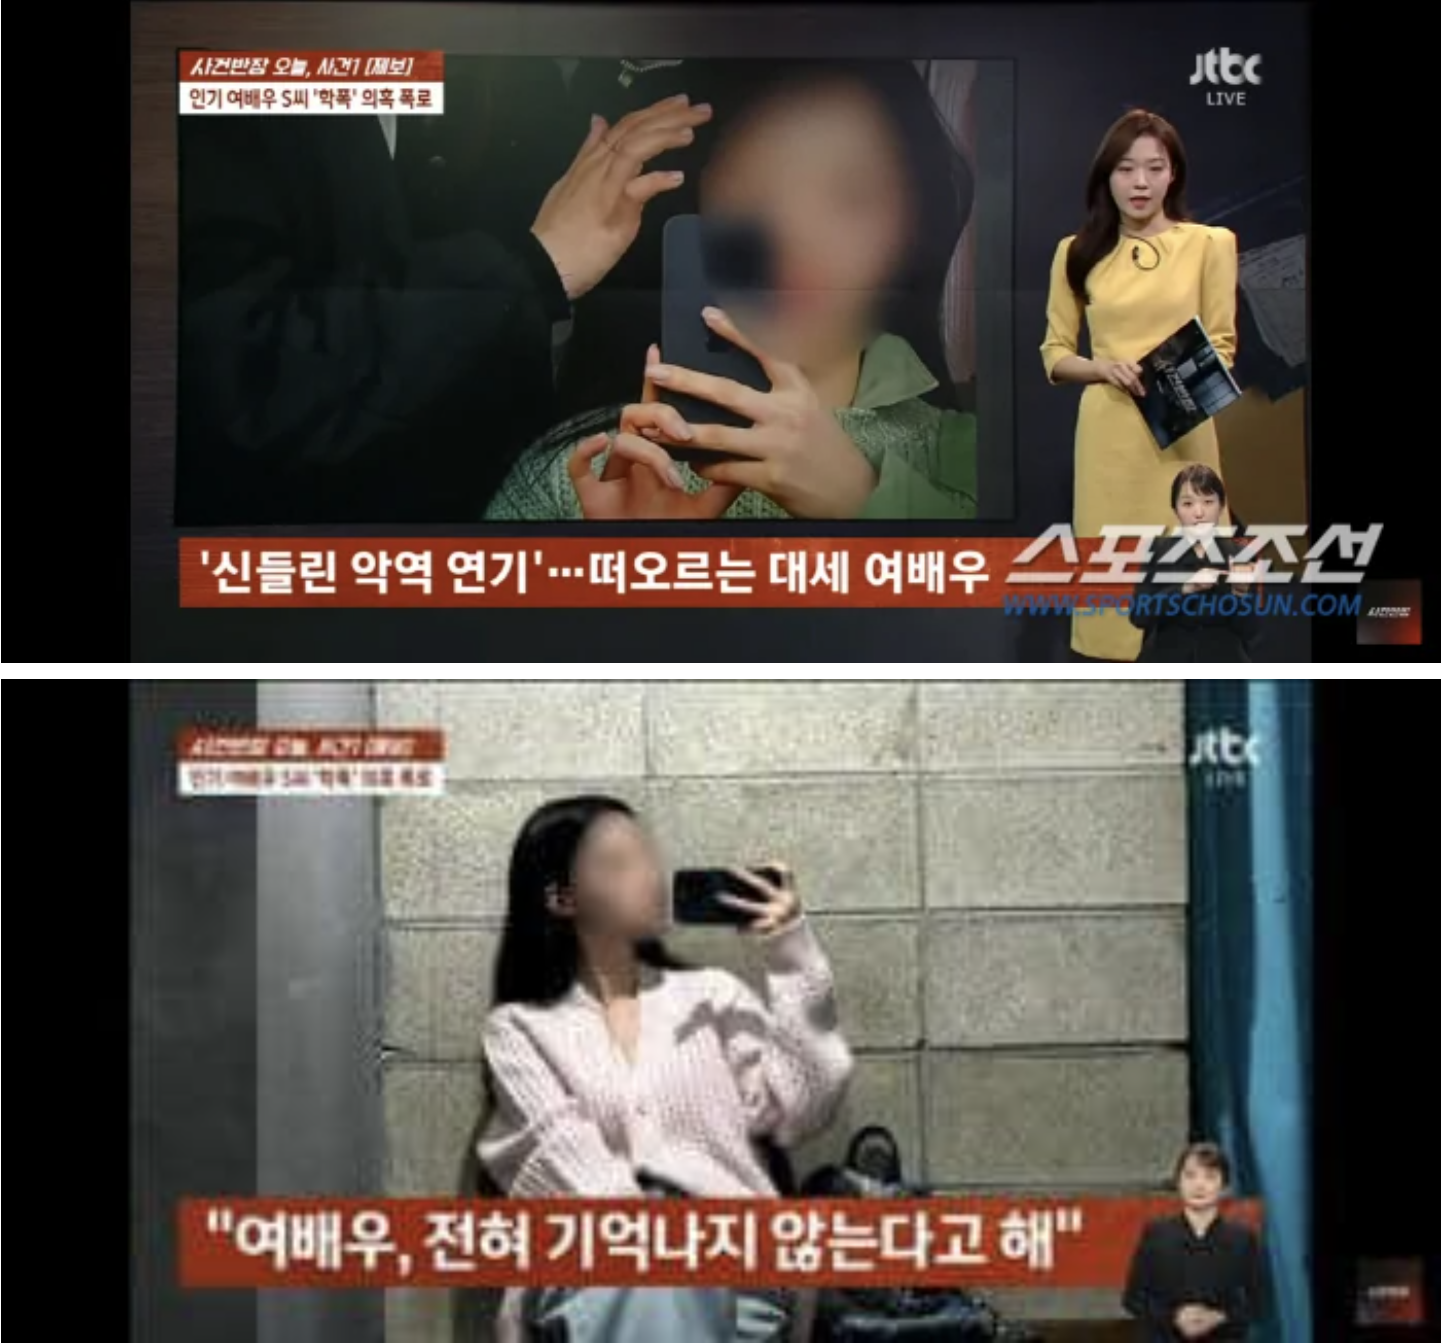 SỐC: Song Ha-yoon của 'Marry My Husband' bị tố đánh bạn suốt 90 phút và phản ứng của chính chủ - ảnh 1